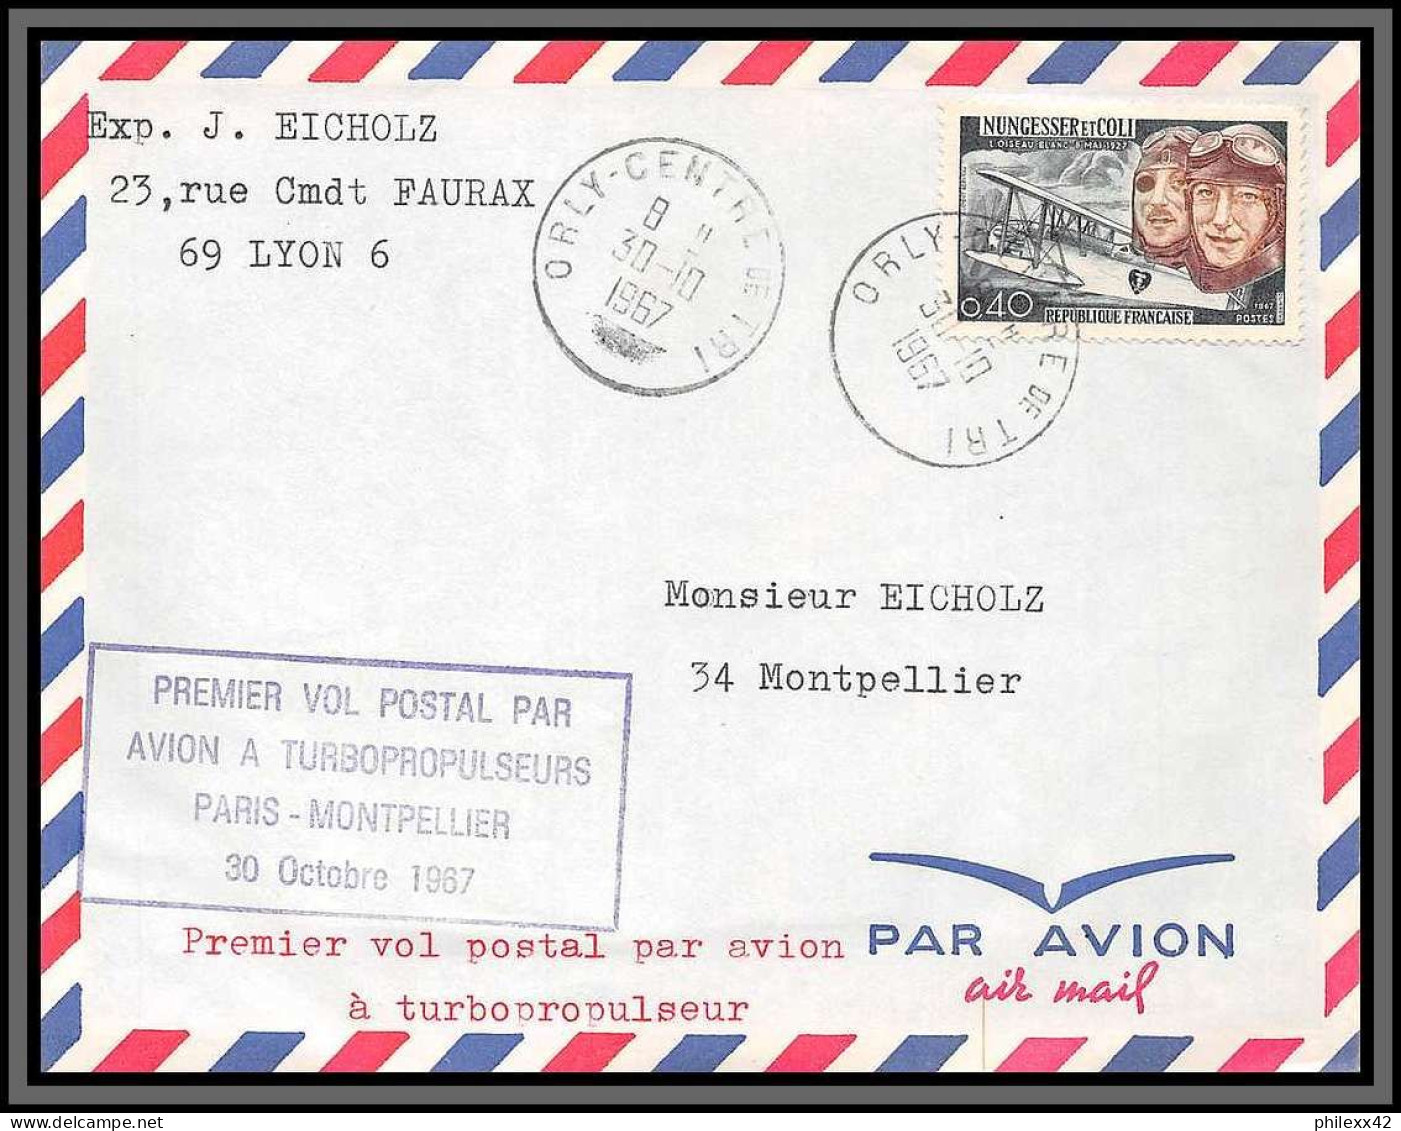 10251 1er Vol Postal Par Avion A Tubopropulseurs Paris Montpellier Orly 30/10/1967 Lettre Cover France Aviation  - Premiers Vols